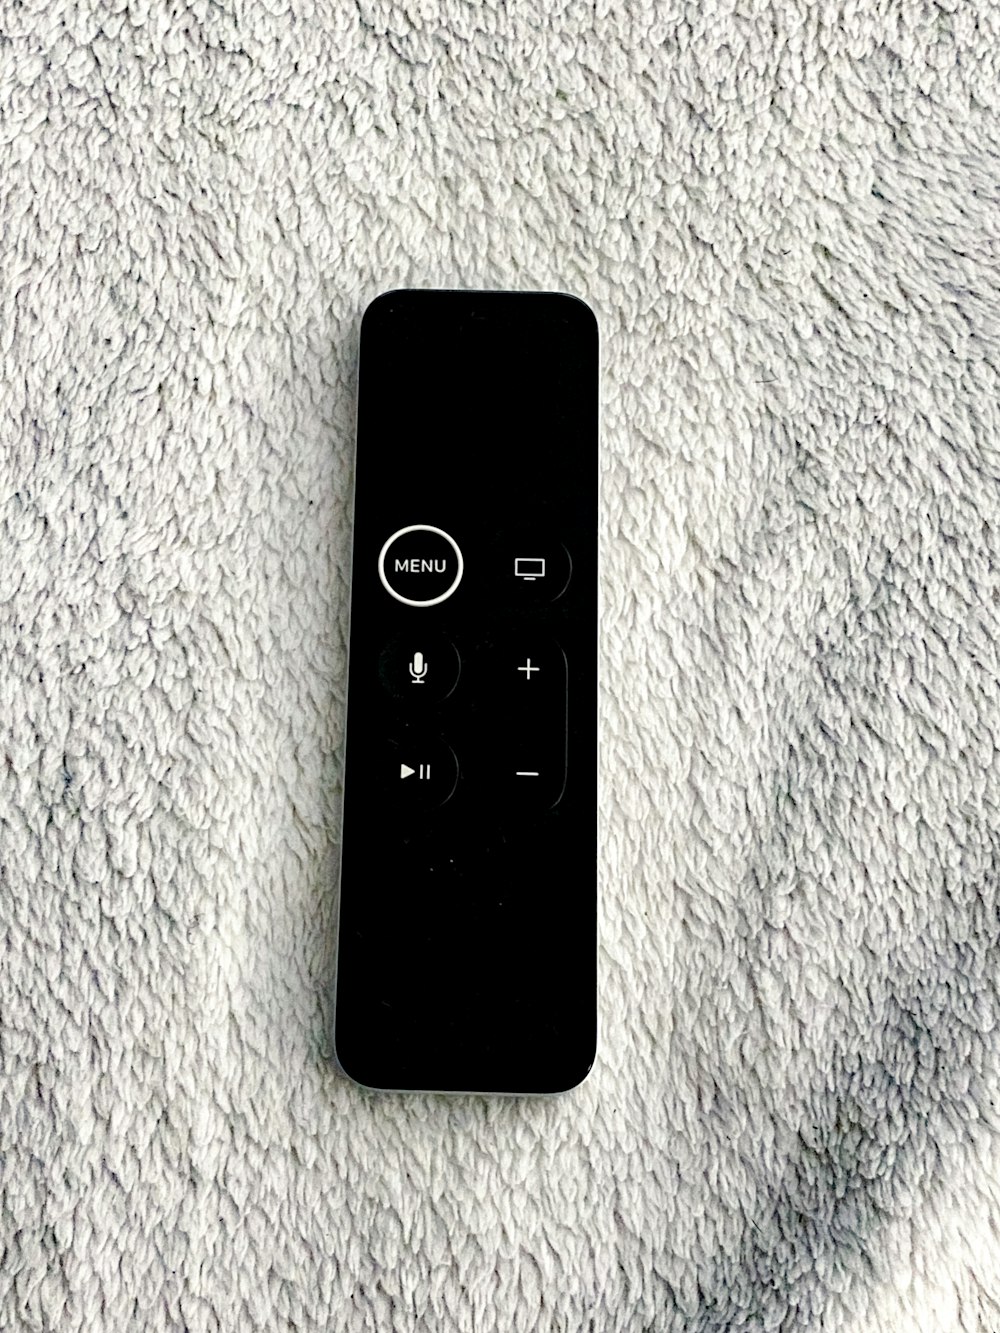 black remote control on white textile